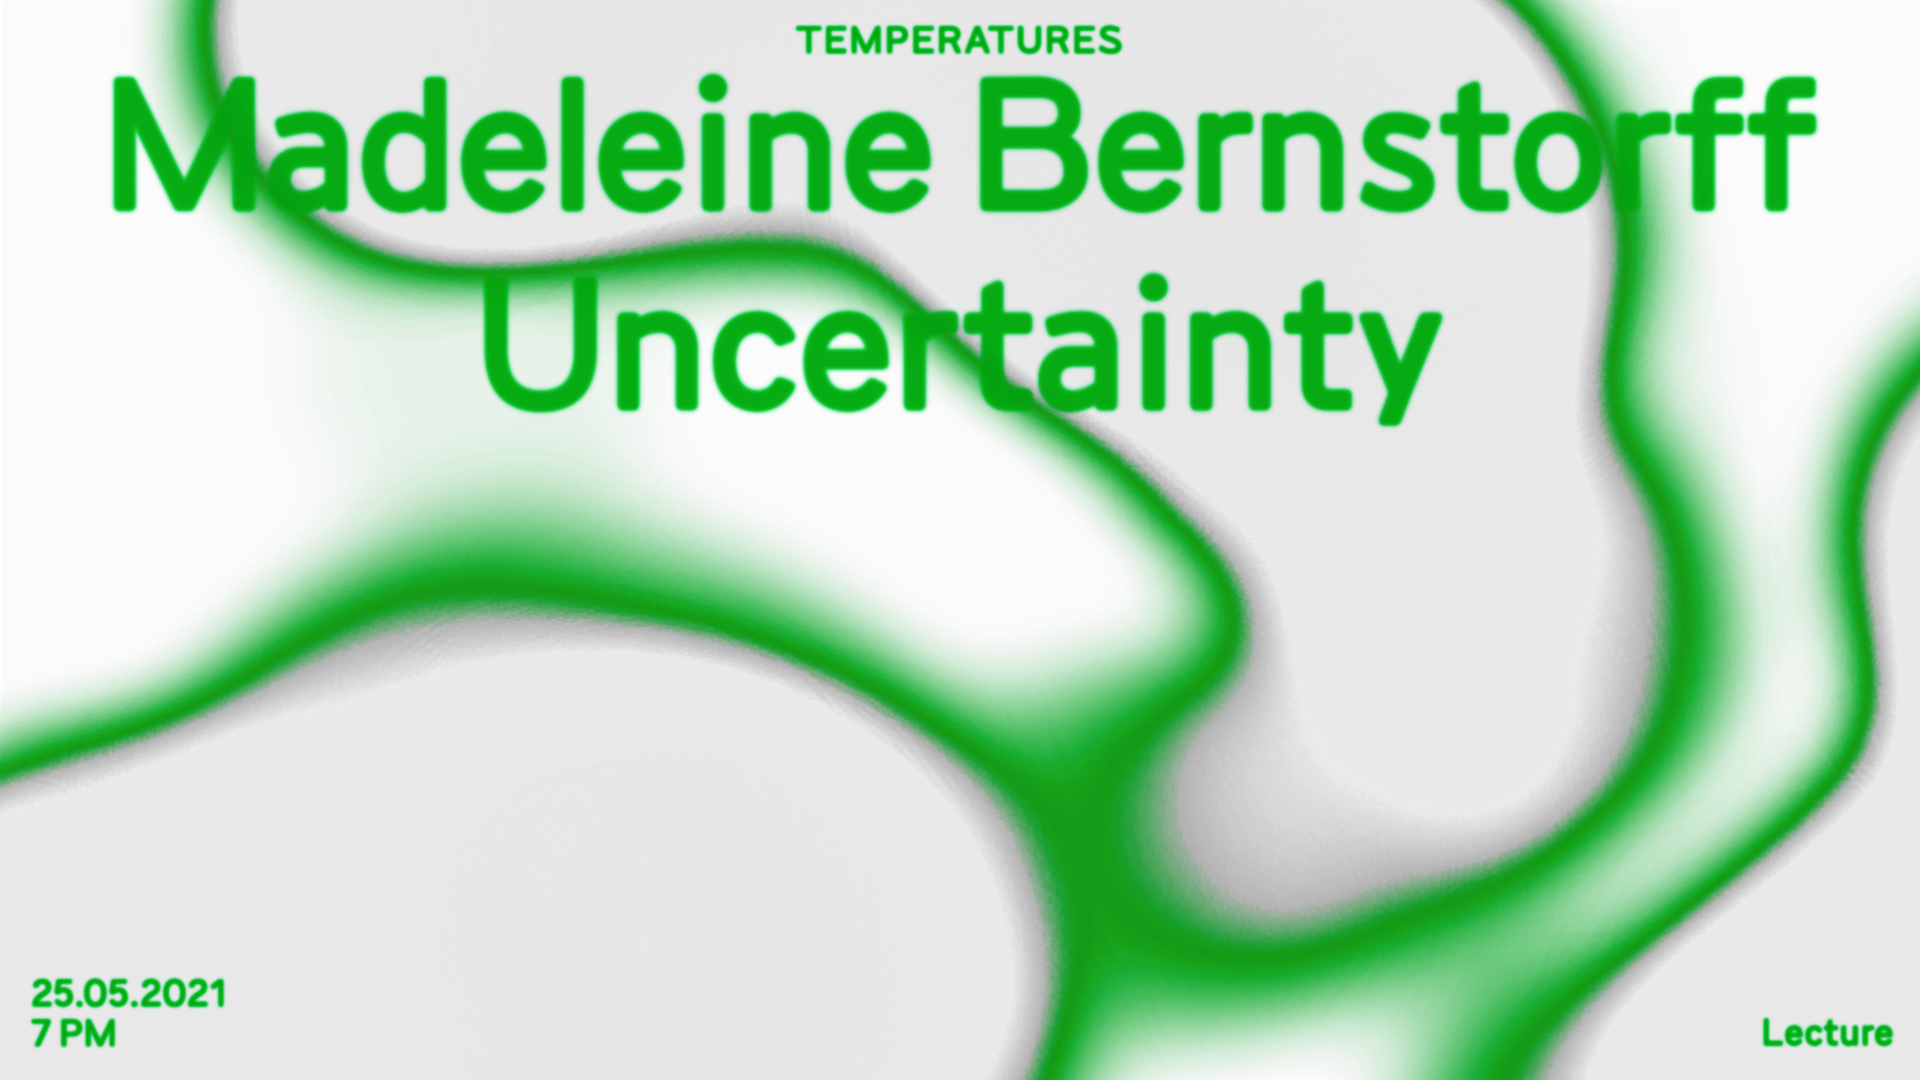 Temperatures IV: Madeleine Bernstorff – Uncertainty